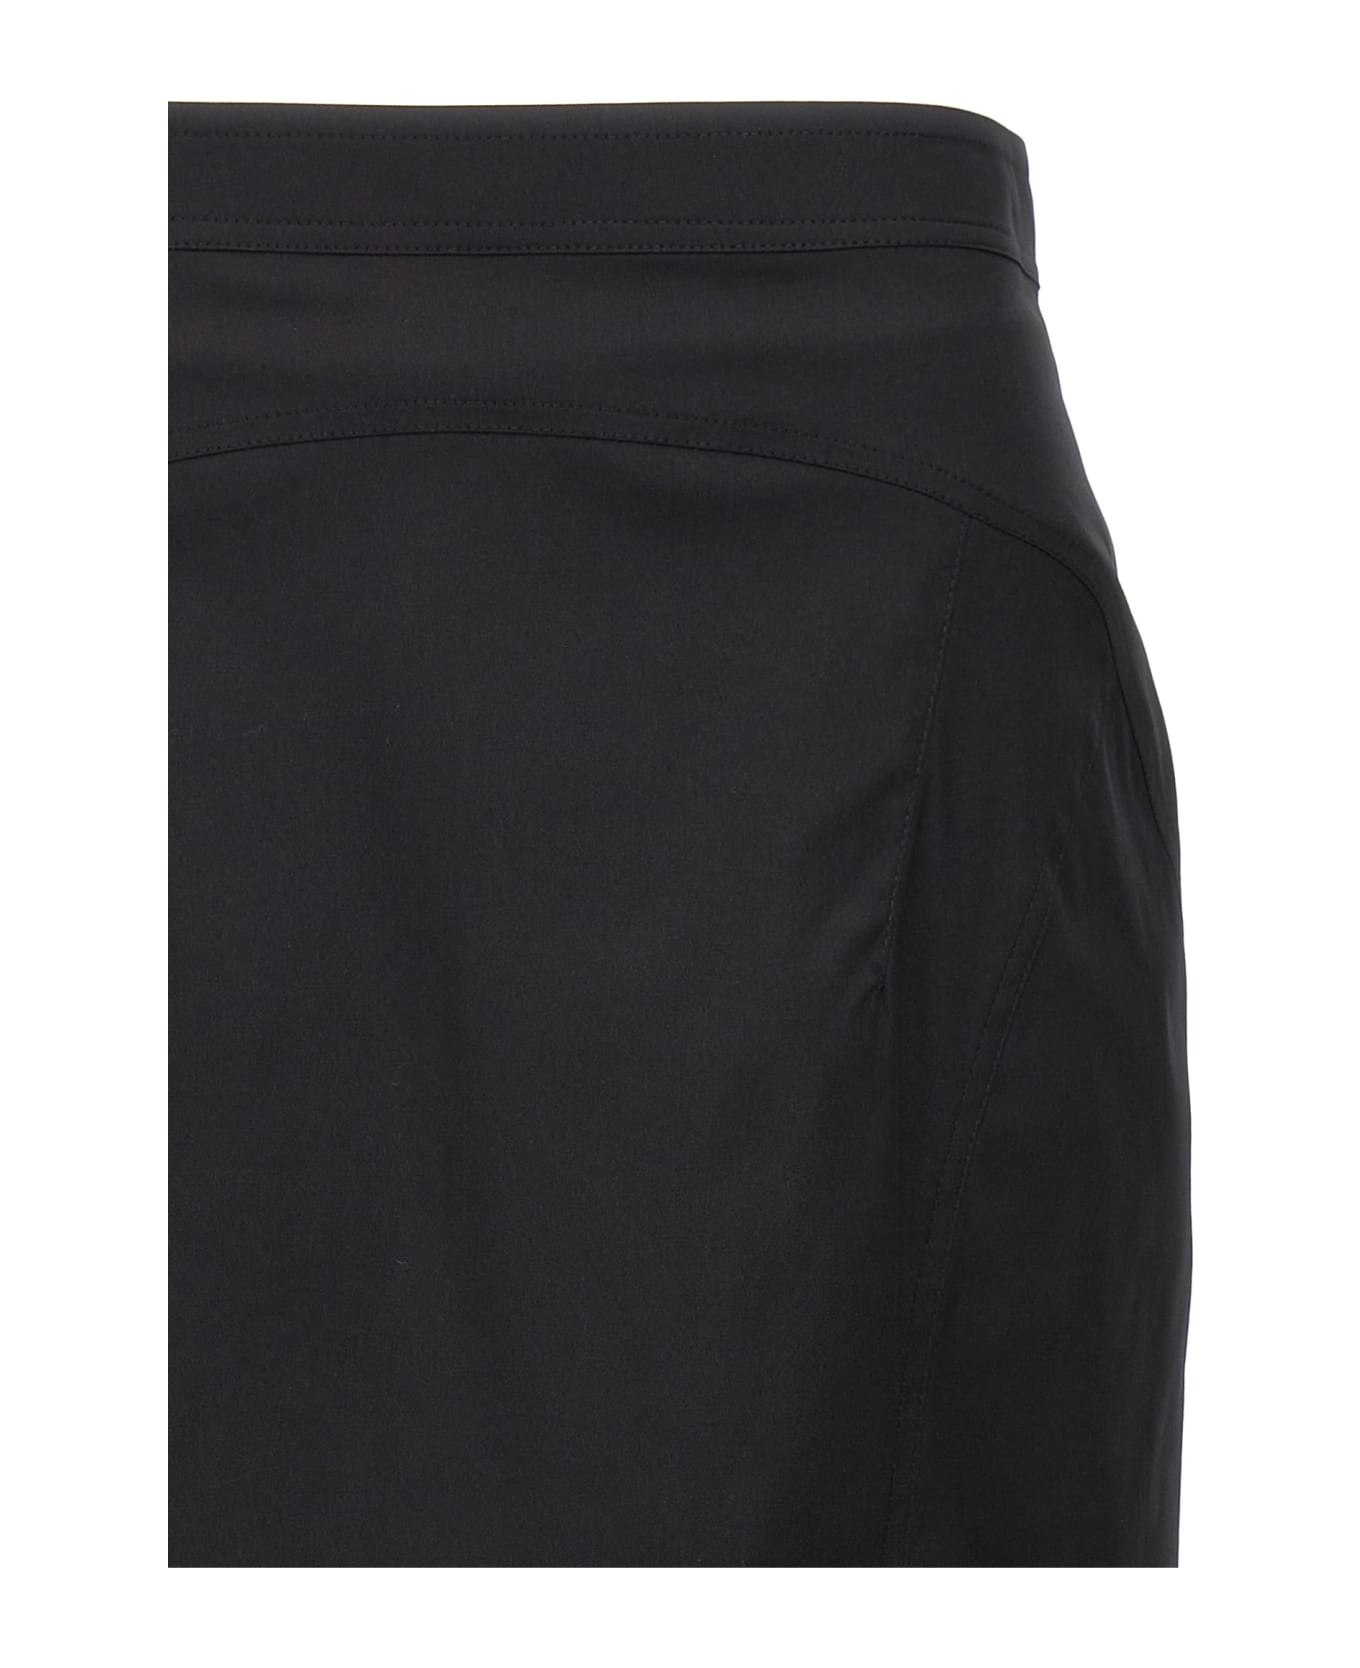 N.21 Longuette Skirt - Black  